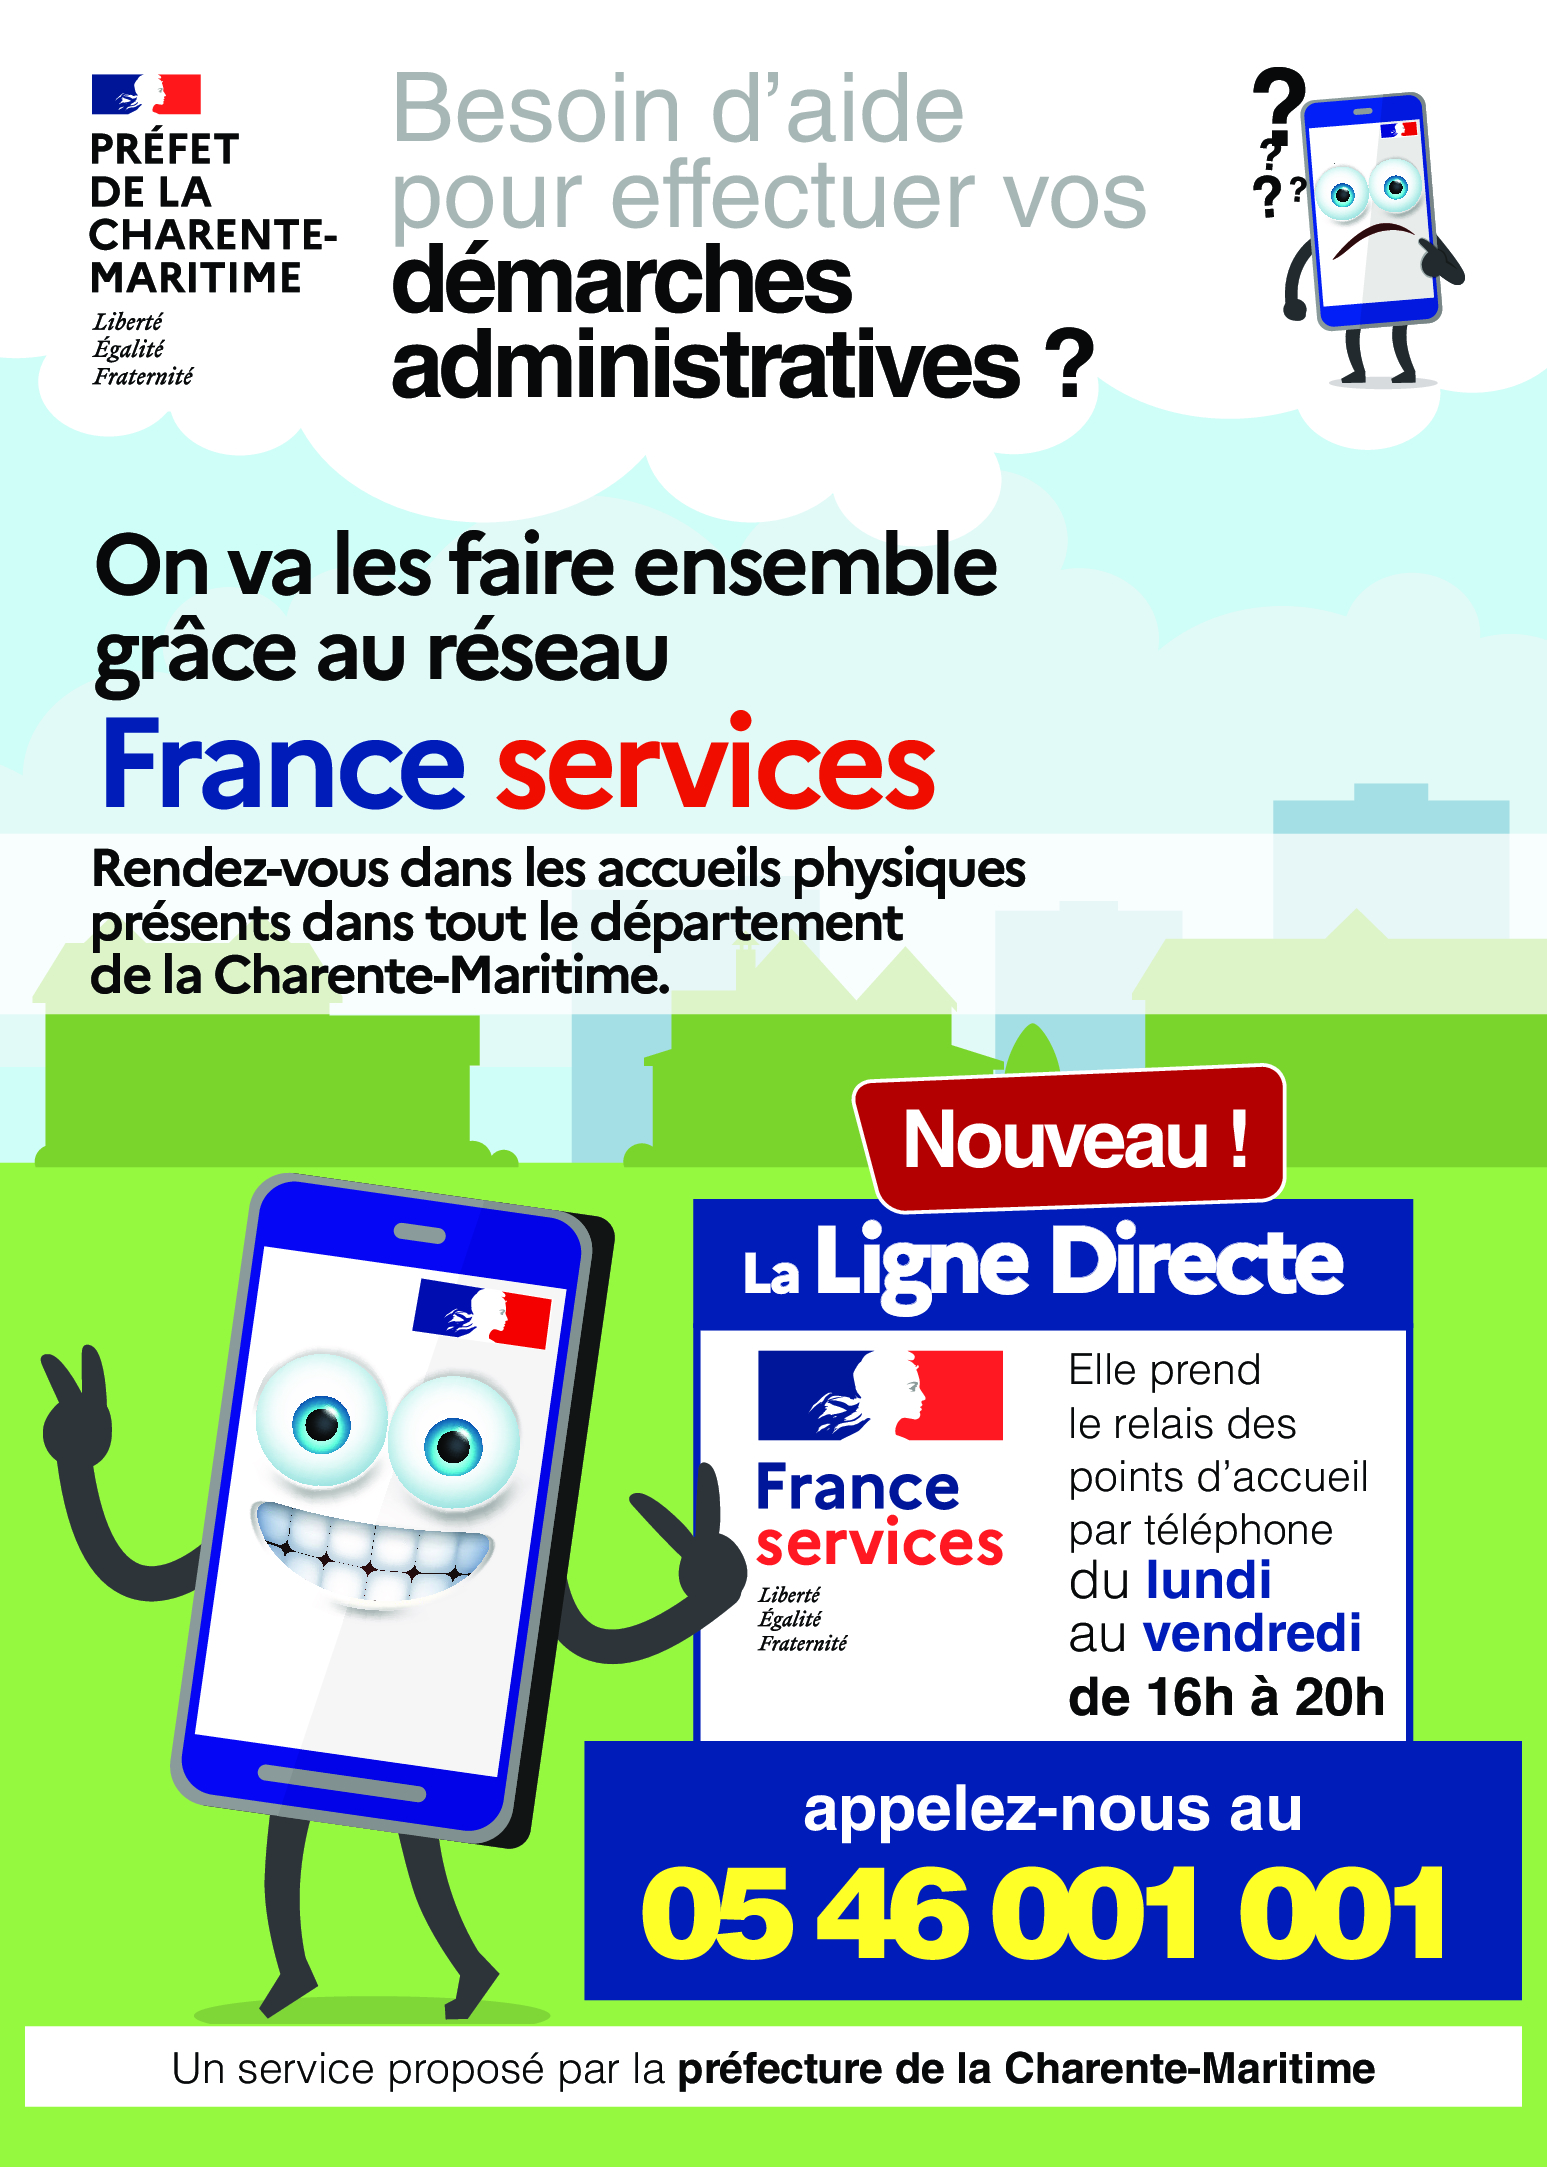 Ouverture de la ligne directe France Services